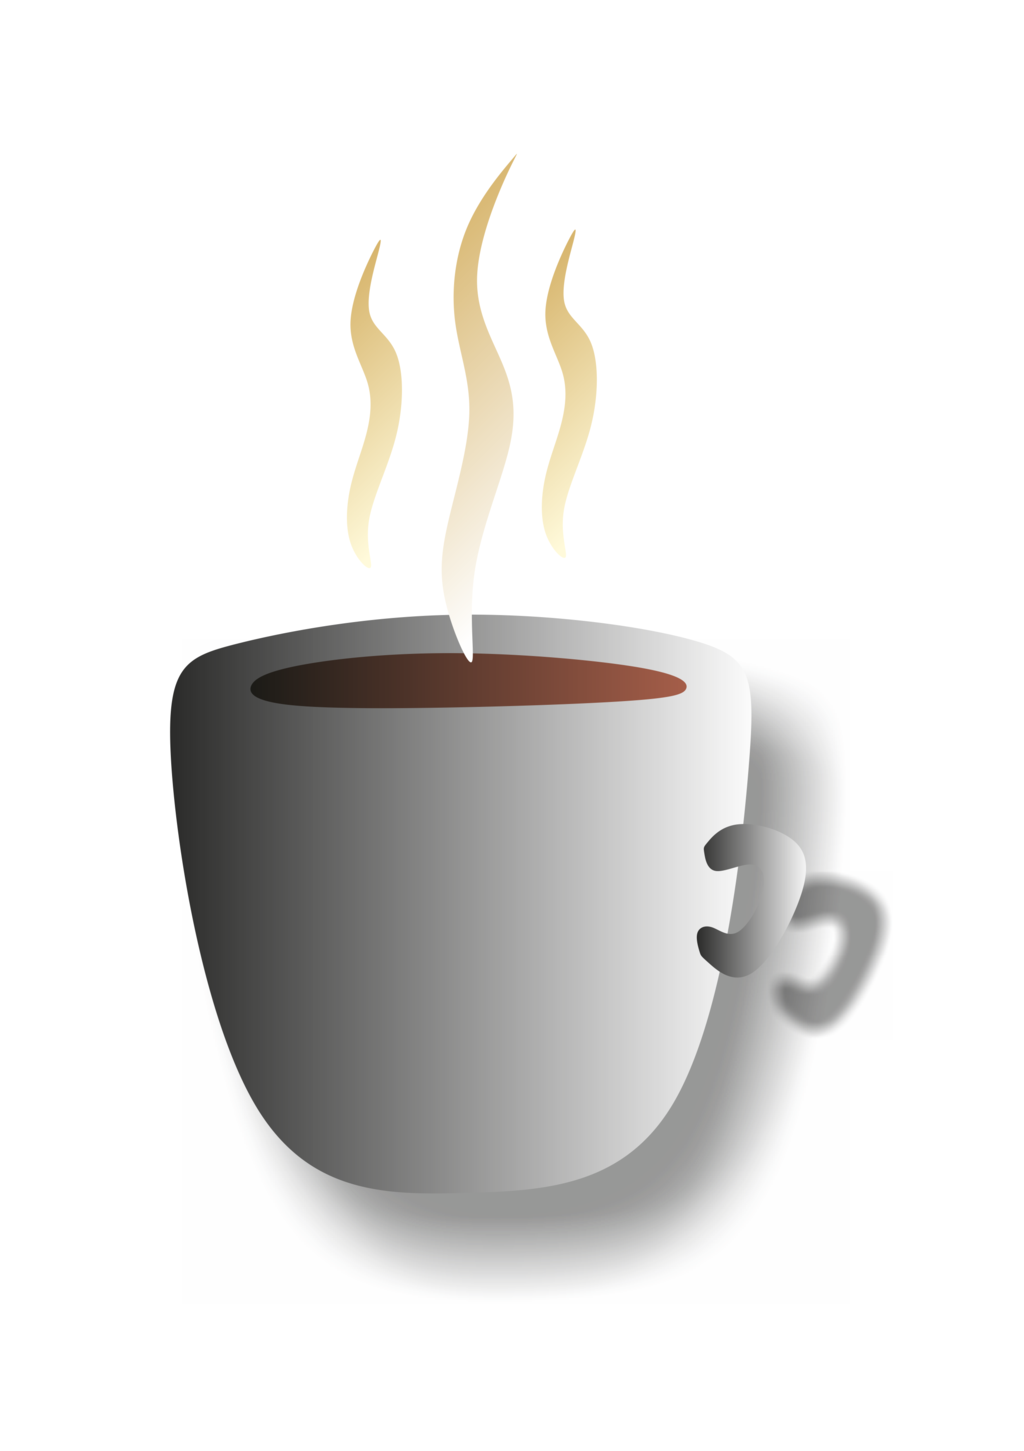 Coffee Cup Emoticon